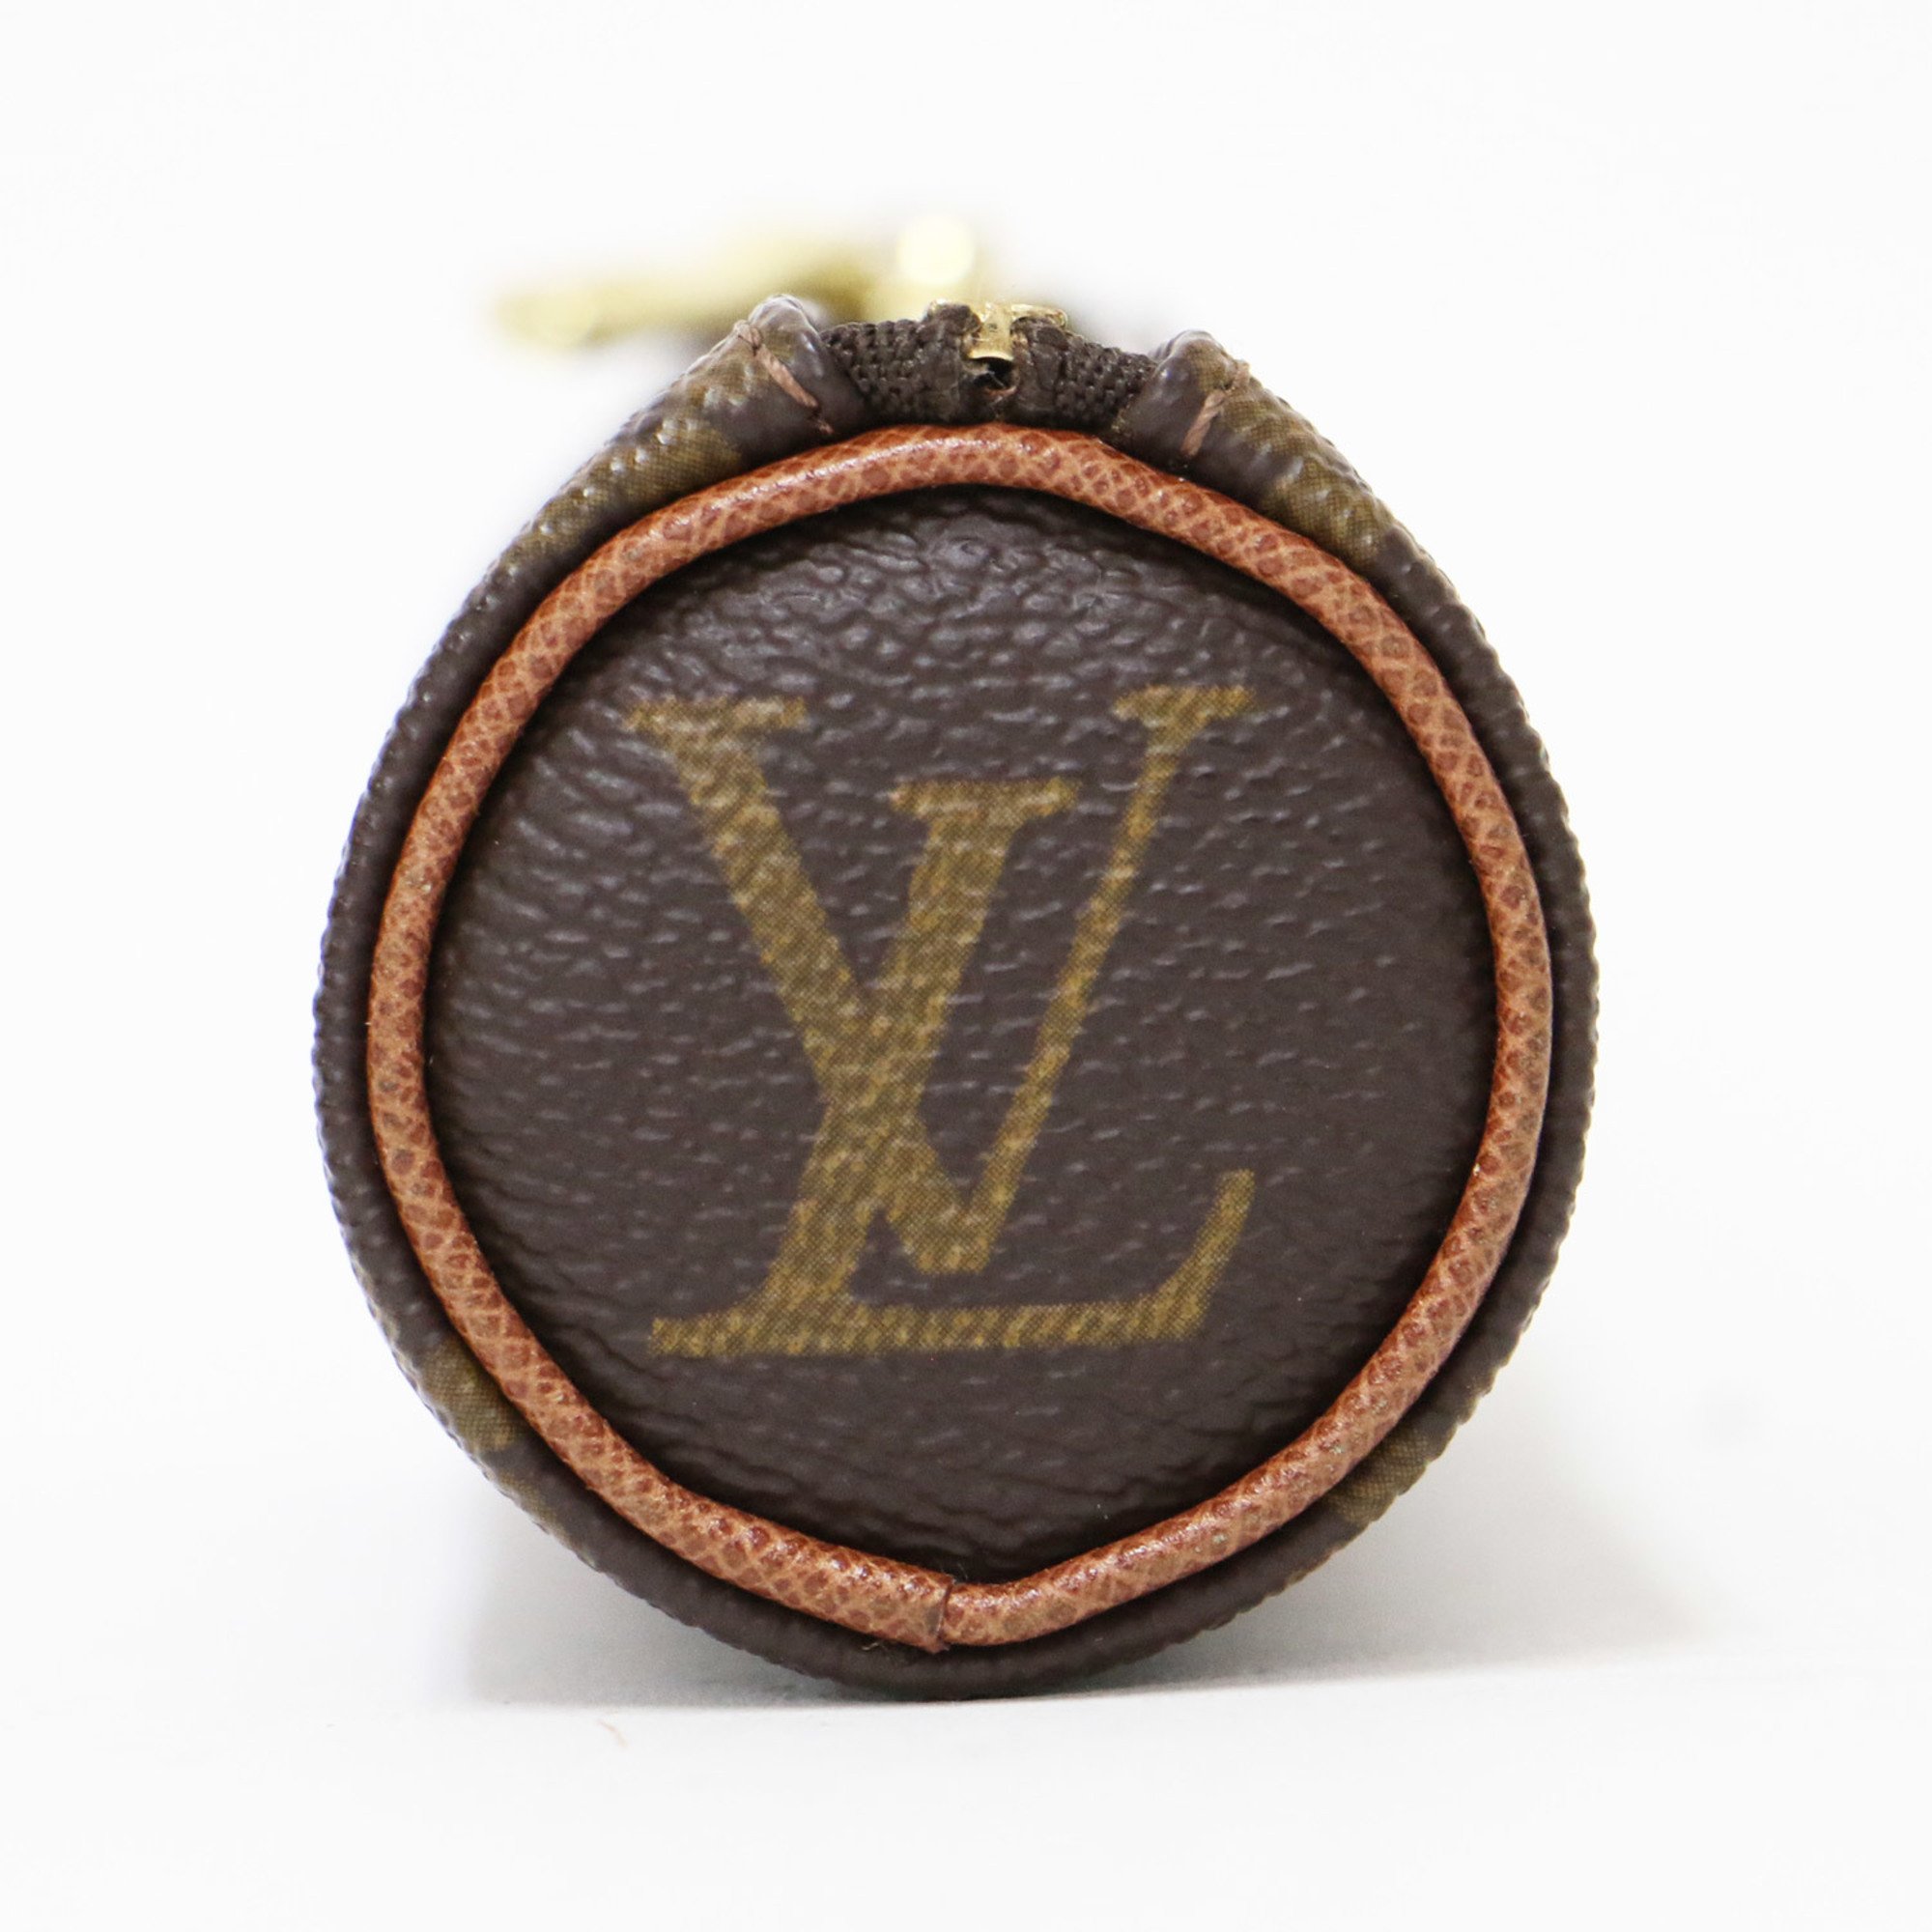 LOUIS VUITTON Louis Vuitton Pouch Brown Monogram Golf Ball Bag Etuit 3 Bardoux Vintage M58249 Accessory Case